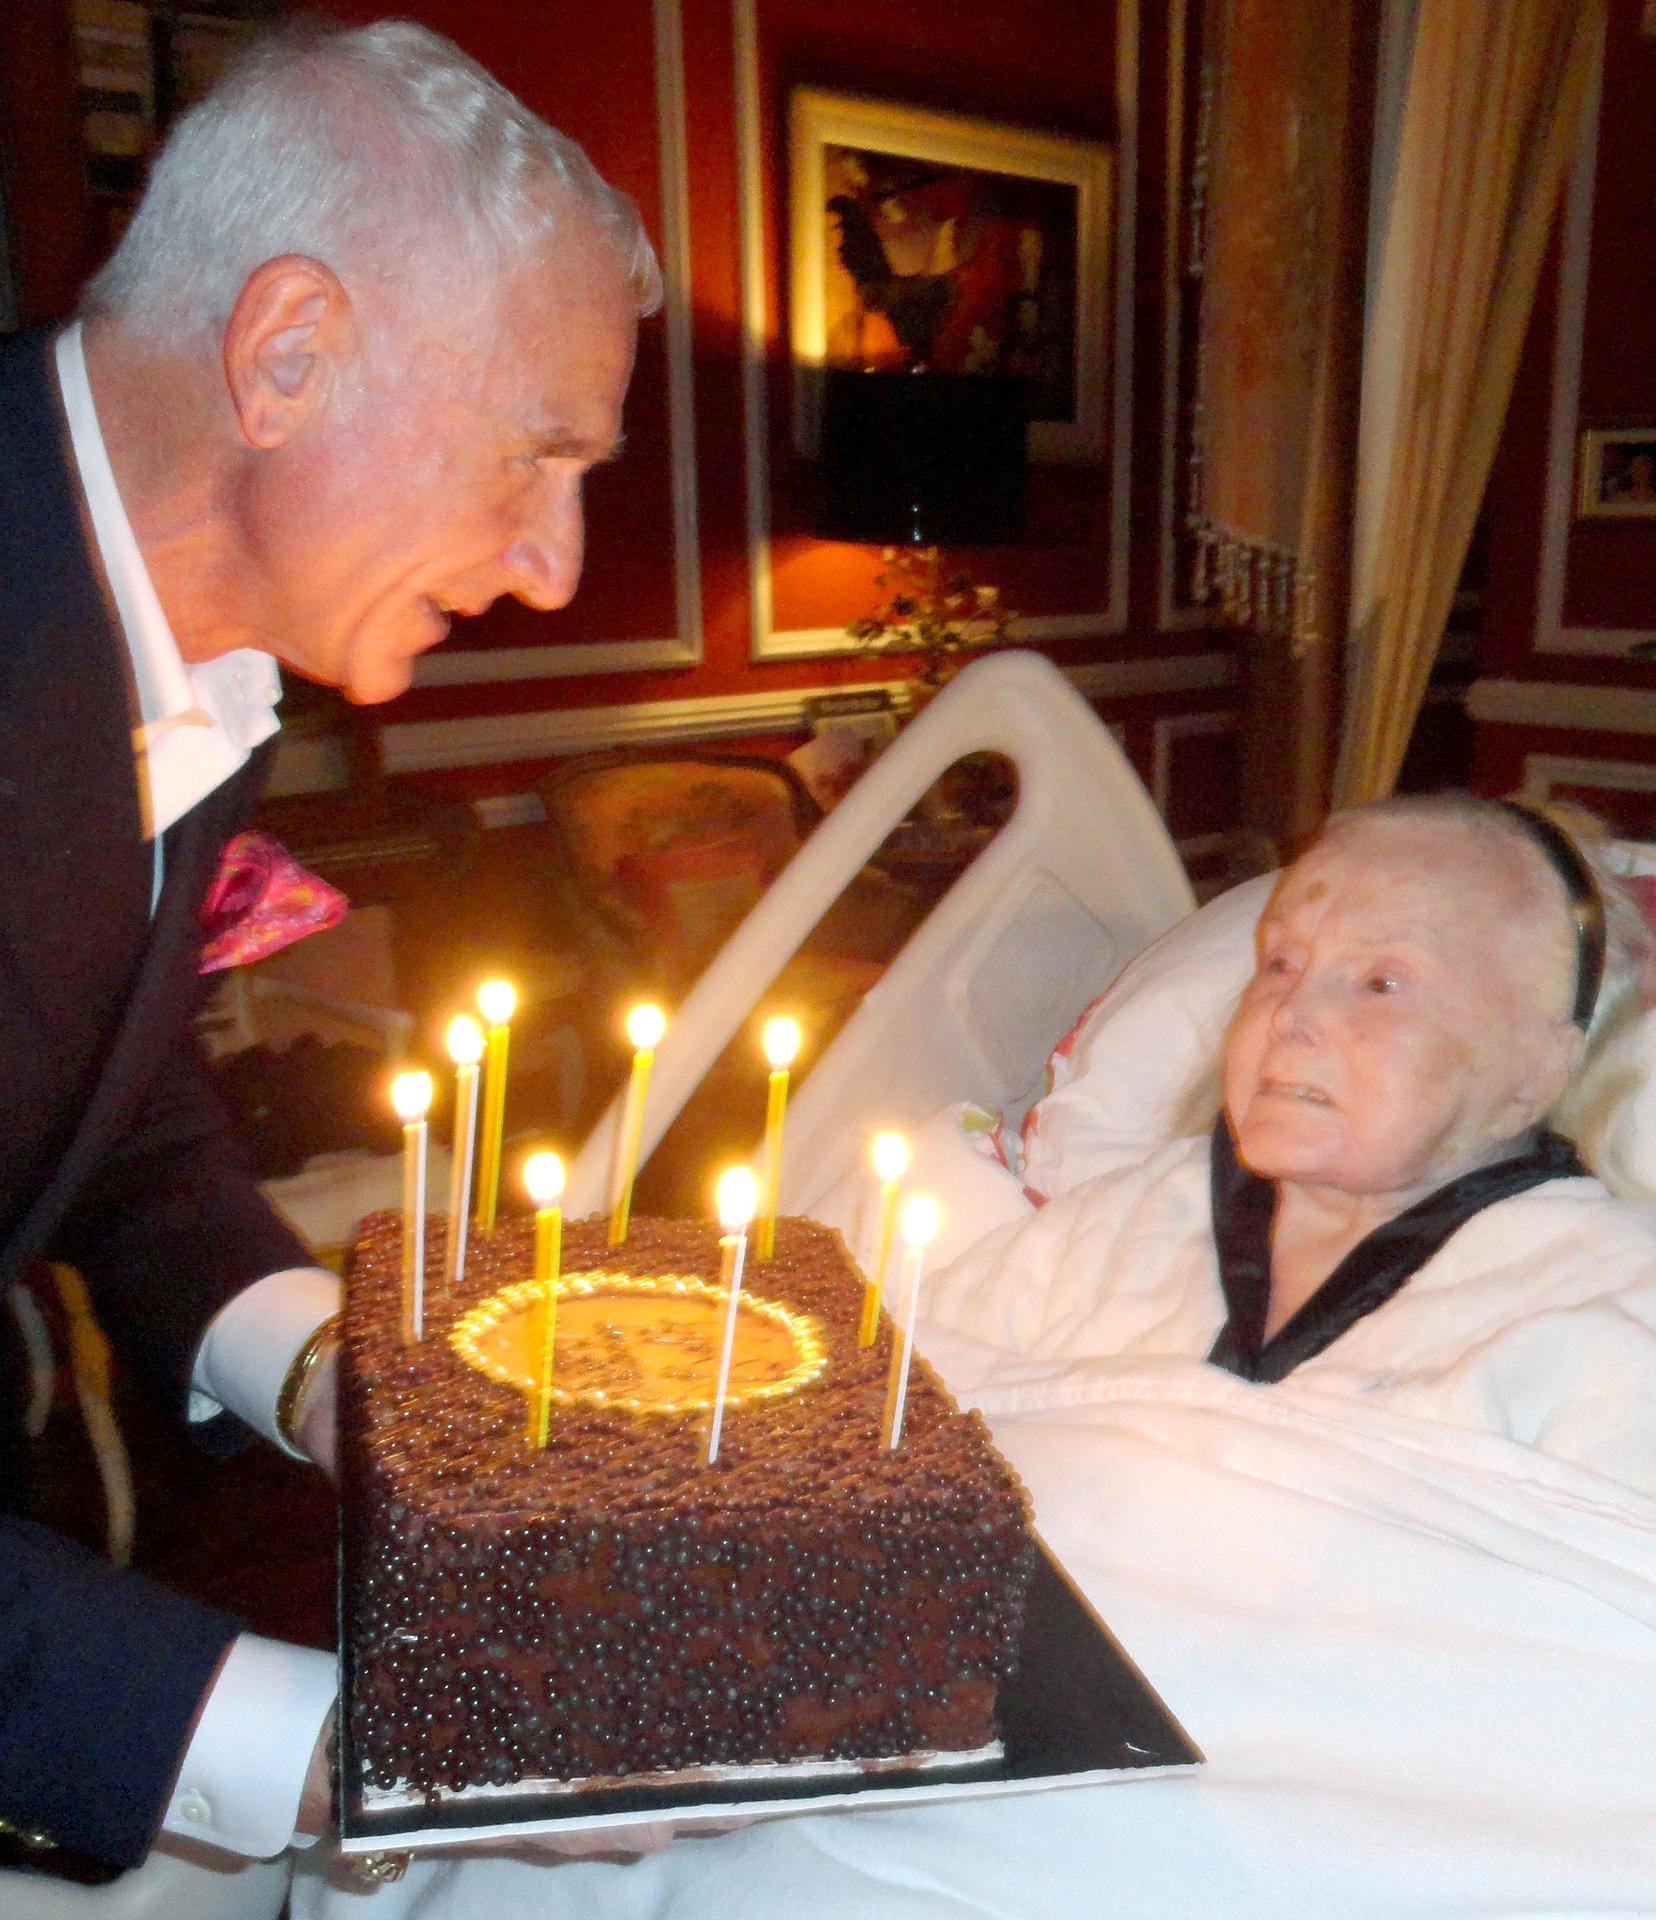 Dieses Foto veröffentlichte der Prinz ein Jahr später. Auch hier überreicht er seiner Frau eine Torte zum Geburtstag.